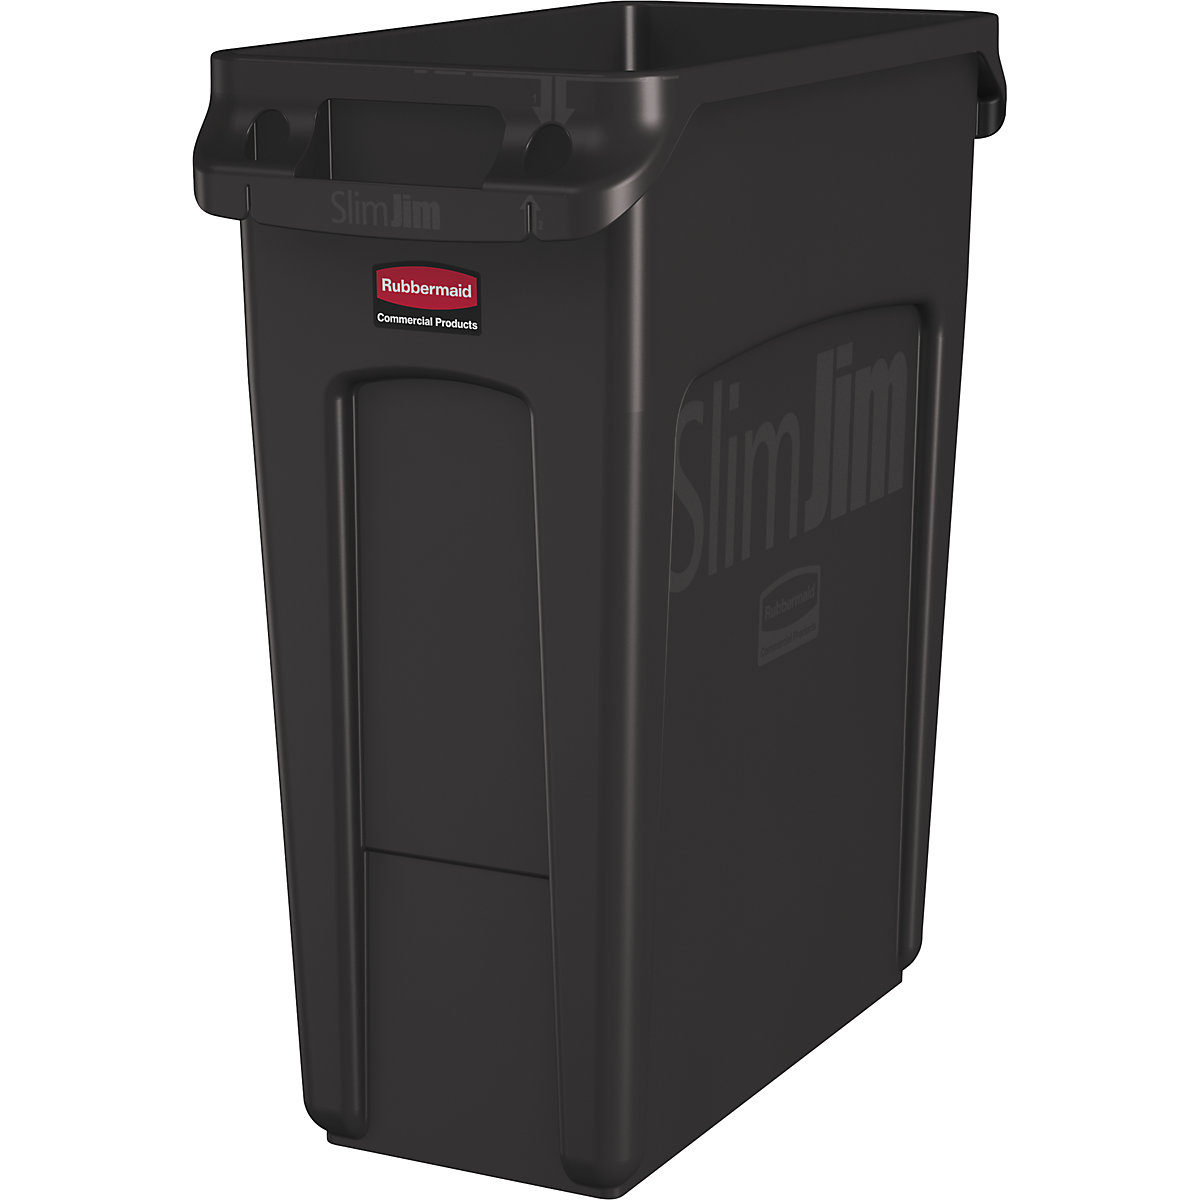 Verzamelaar voor kringloopmateriaal/afvalbak SLIM JIM® – Rubbermaid, volume 60 l, met ventilatiekanalen, bruin-12